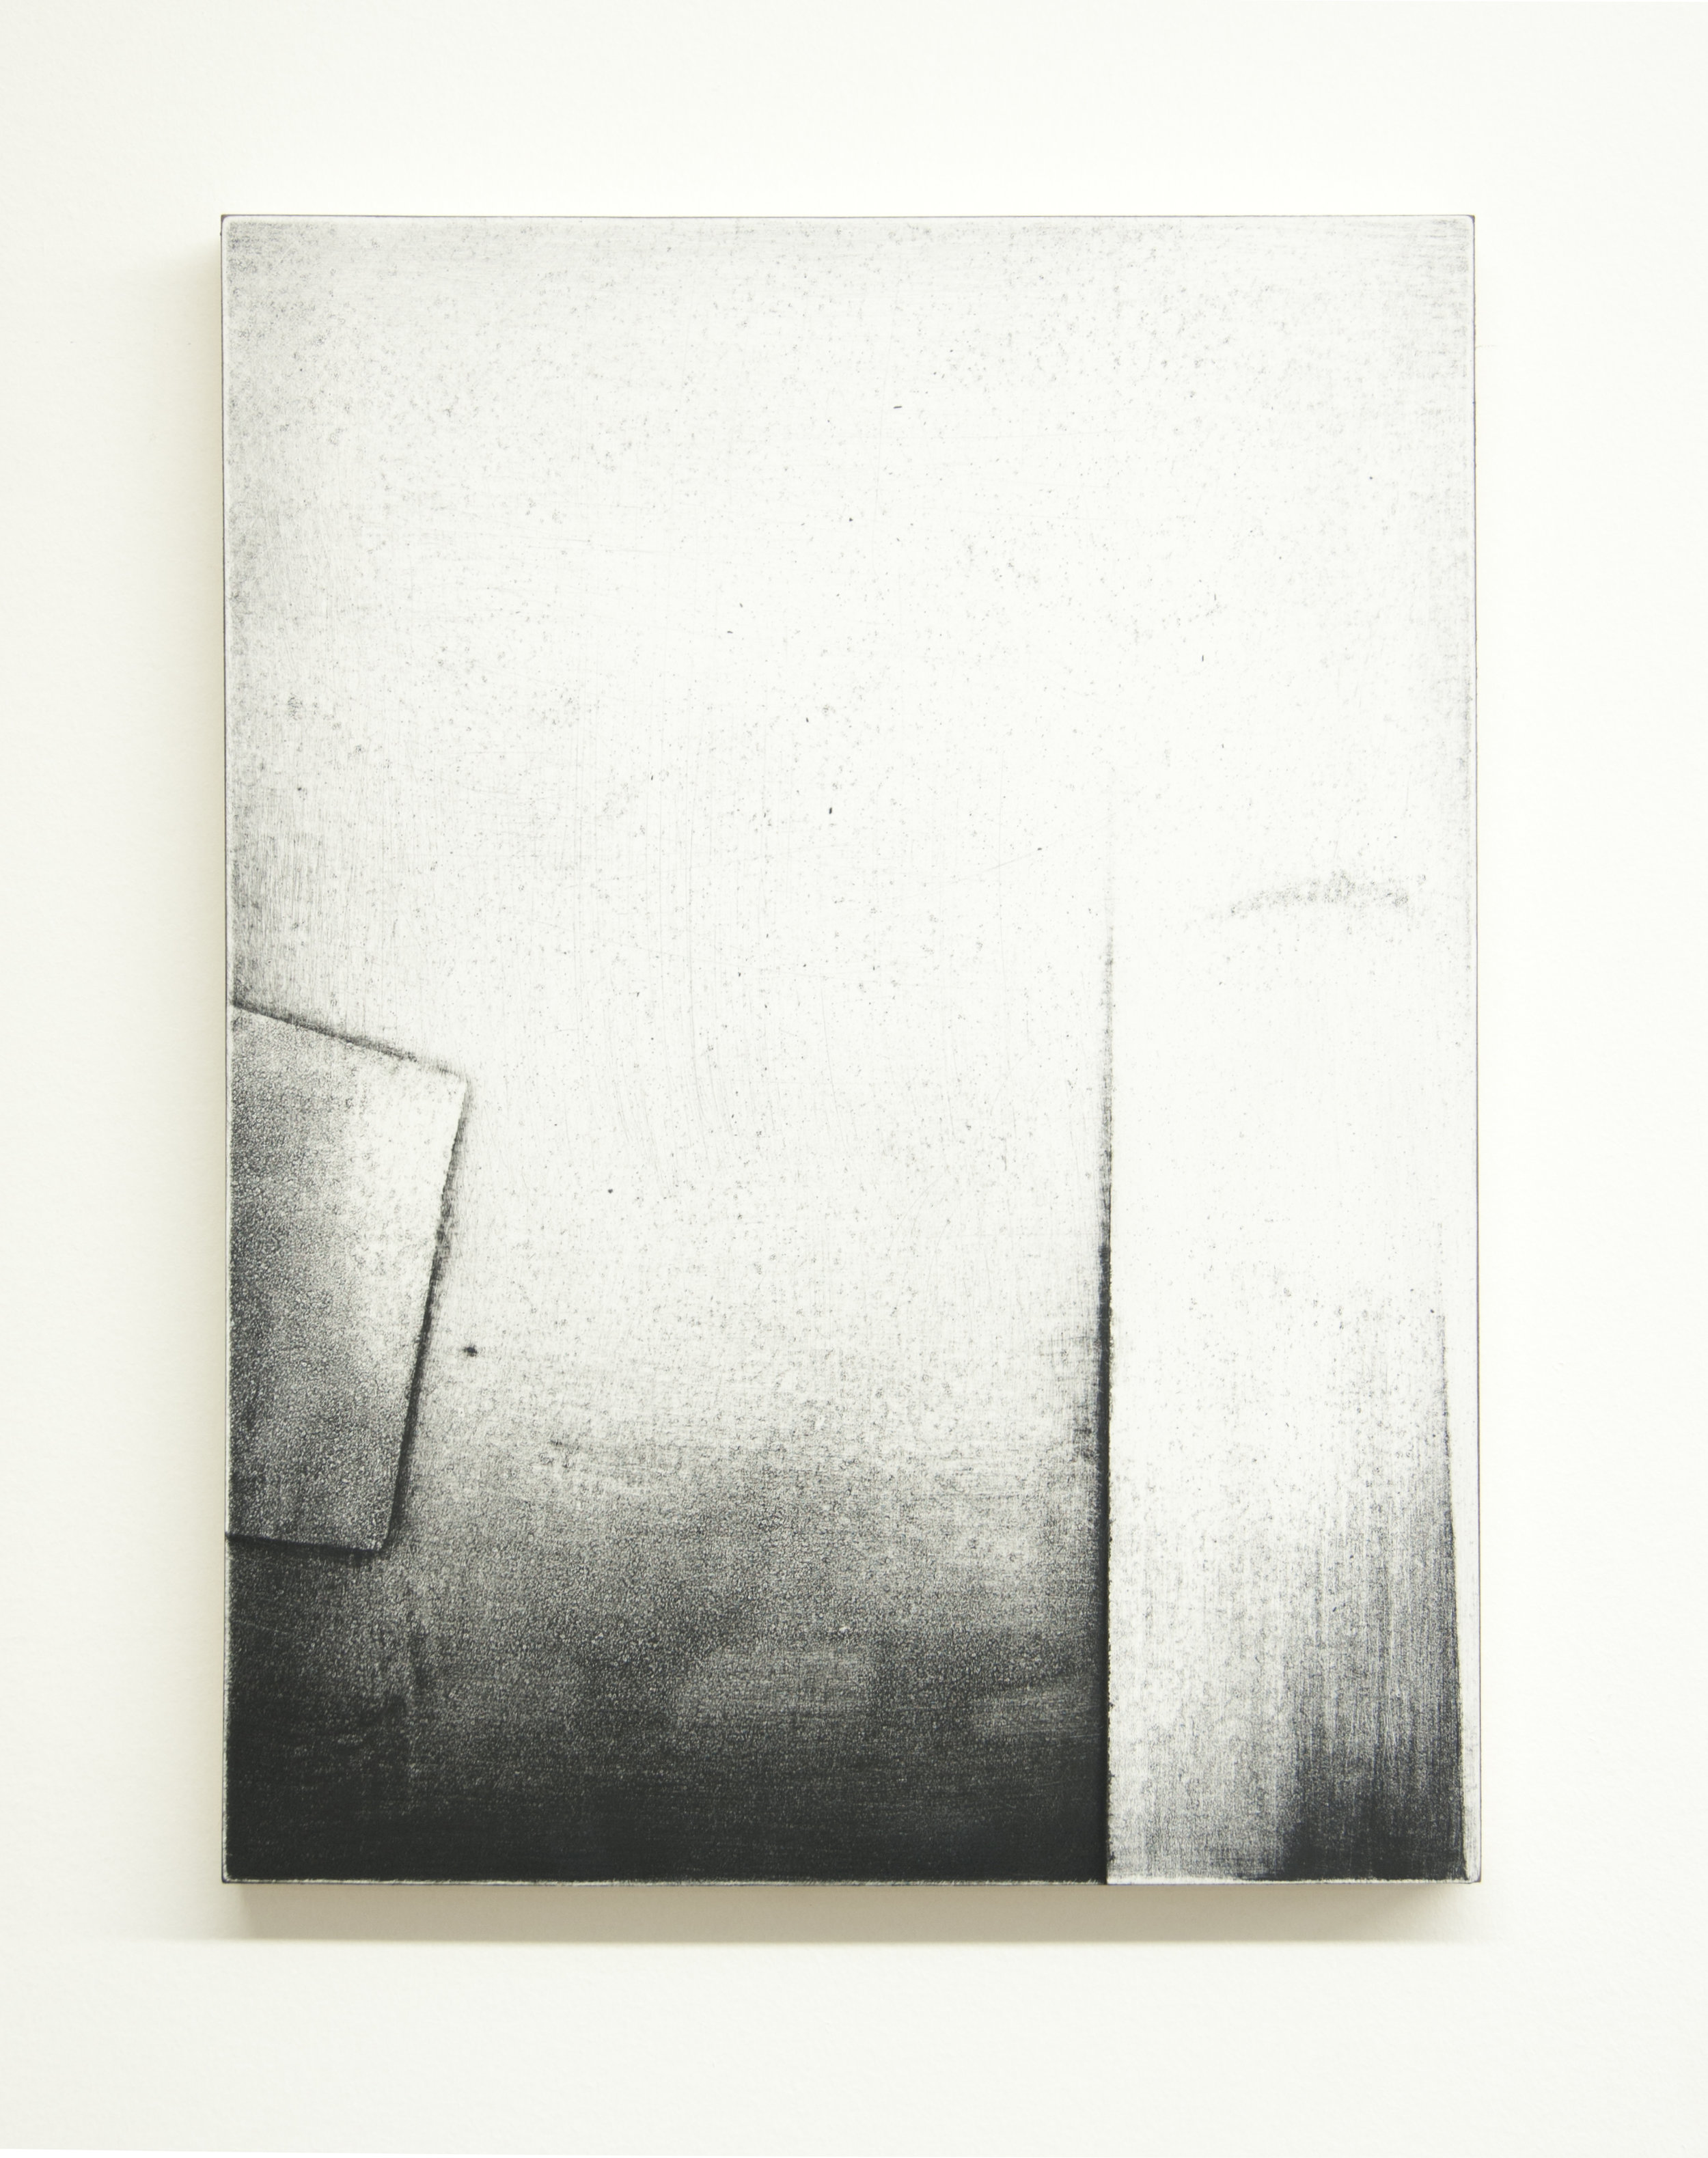  Threshold II, 2015  Acrylic on panel, 12 x 9 inches 